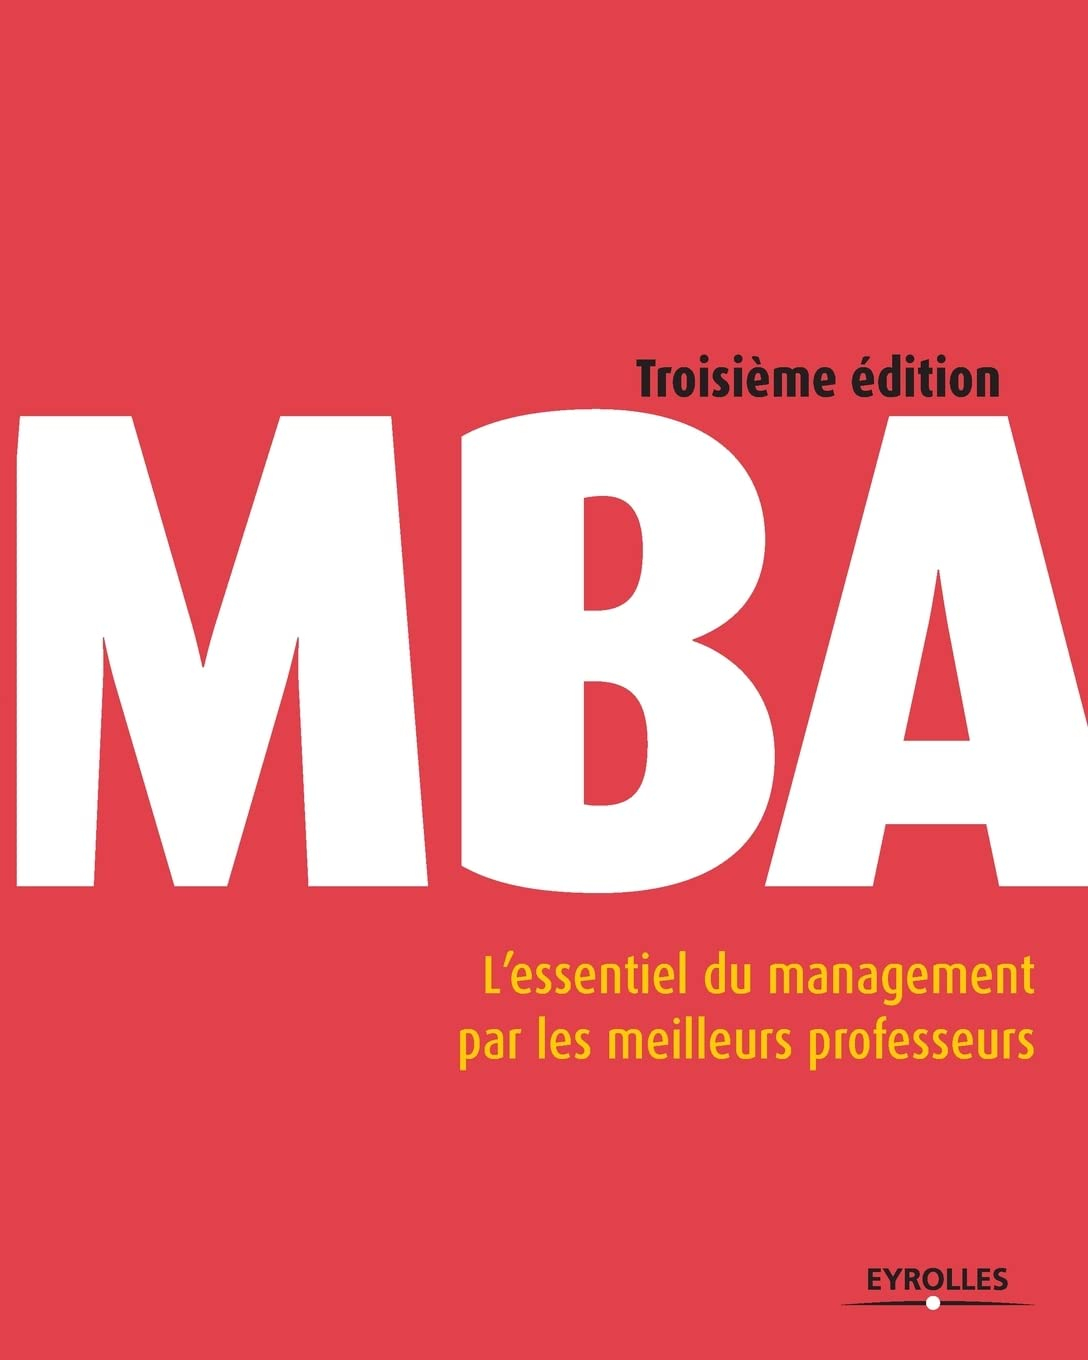 MBA : l'essentiel du management par les meilleurs professeurs